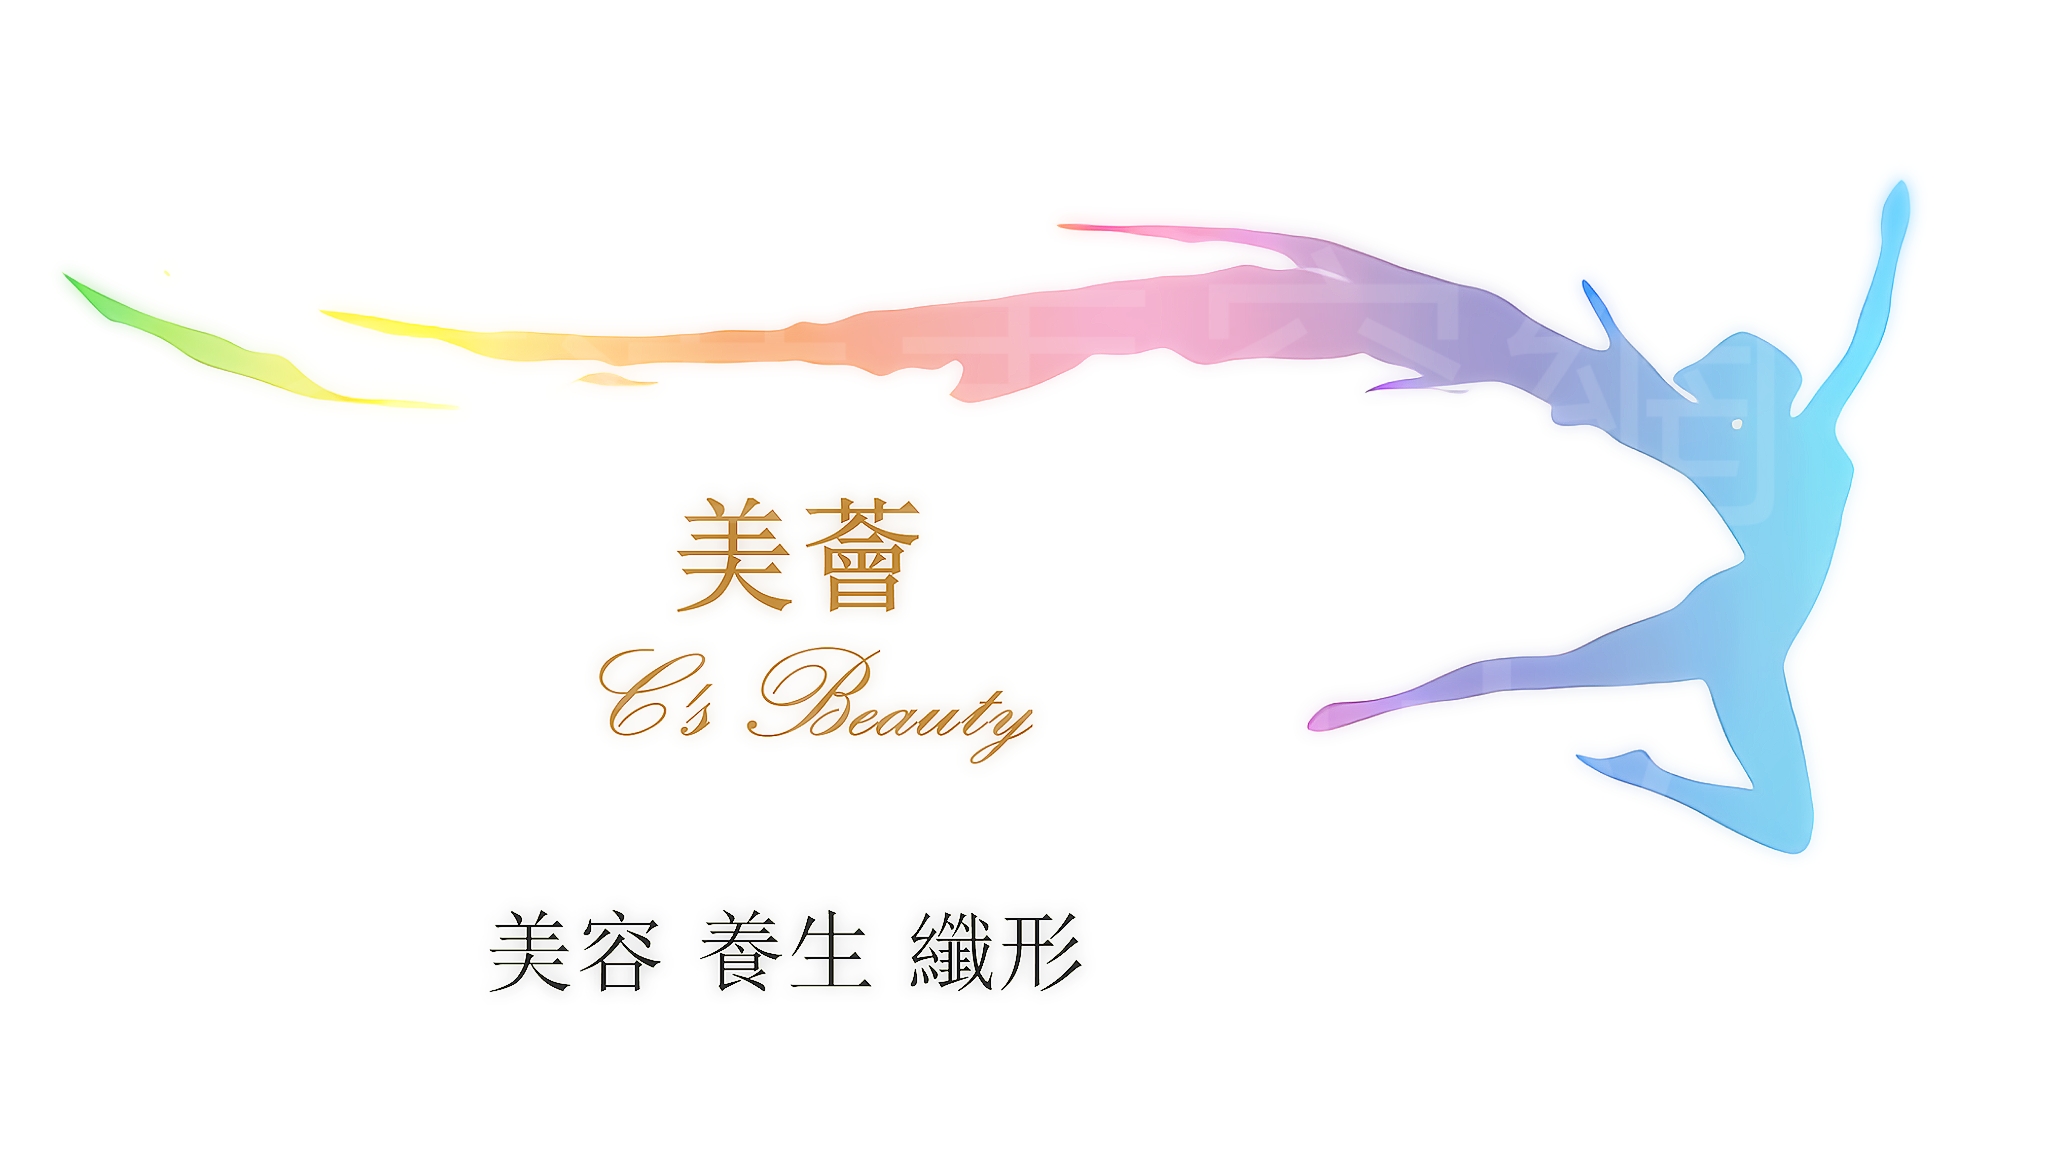 香港美容網 Hong Kong Beauty Salon 美容院 / 美容師: 美薈美容 C's Beauty